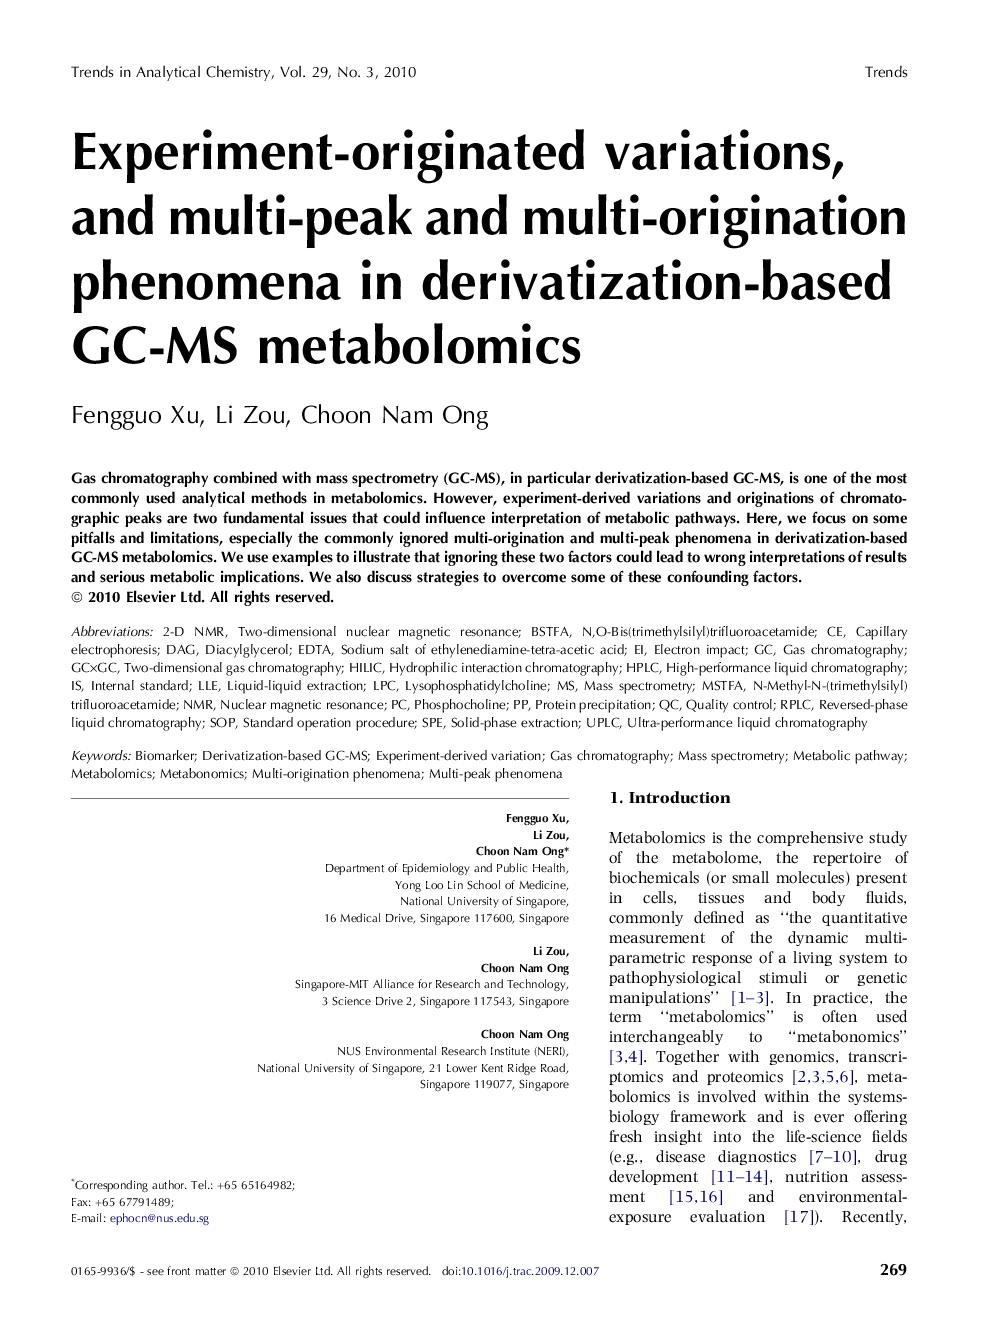 Experiment-originated variations, and multi-peak and multi-origination phenomena in derivatization-based GC-MS metabolomics